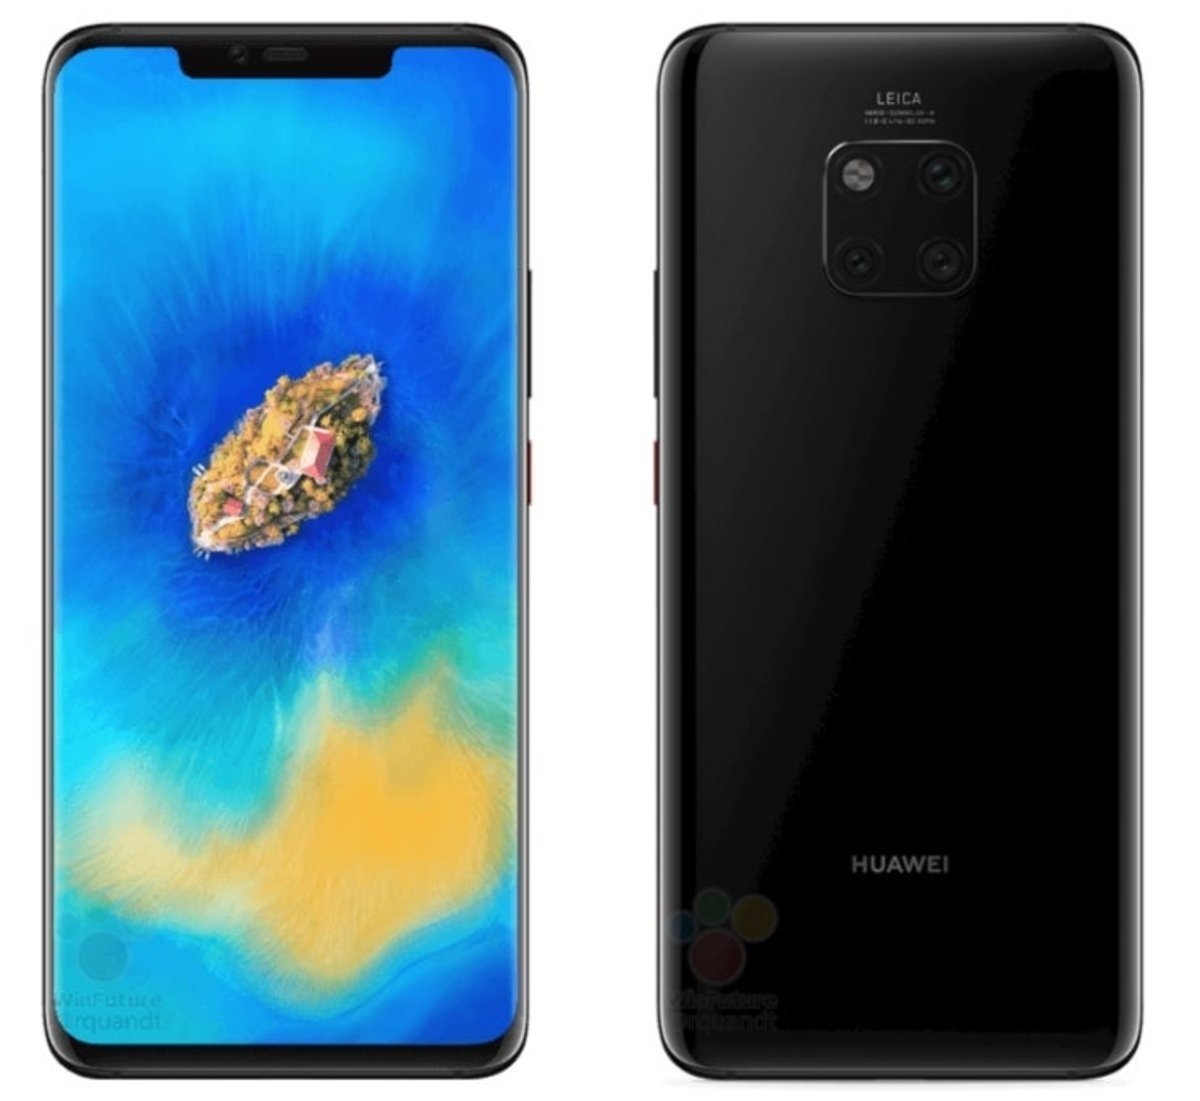 Huawei Mate 20 Pro: imágenes oficiales y características filtradas